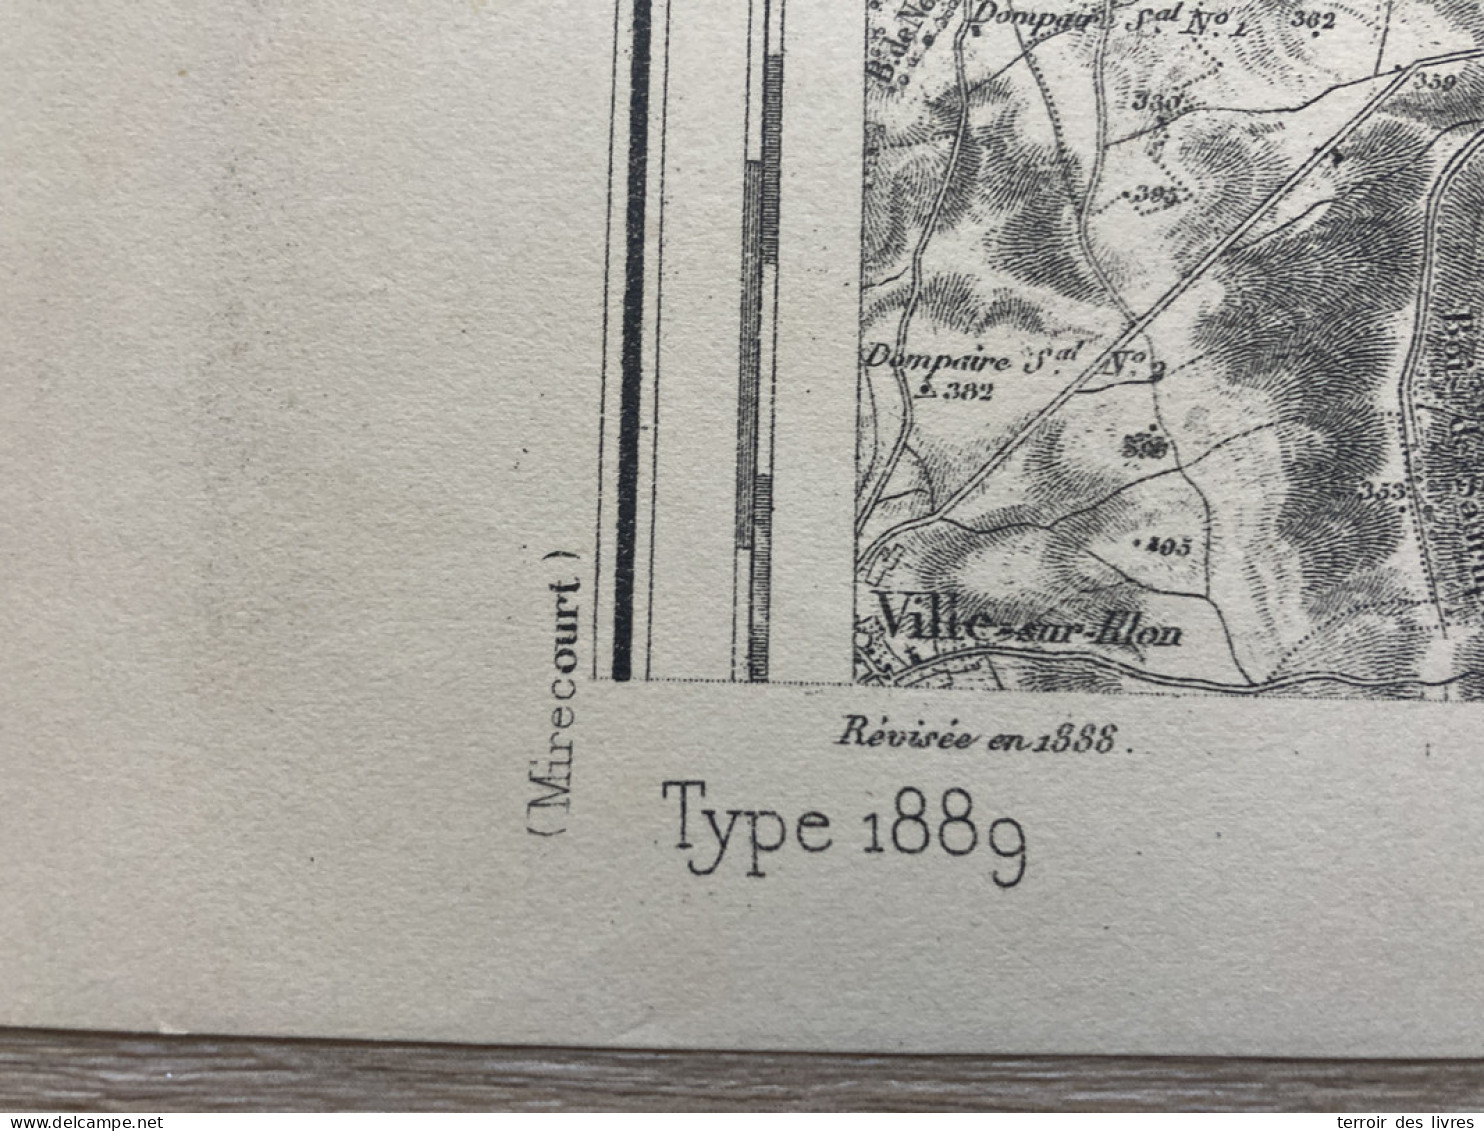 Carte état Major EPINAL 1888 33x50cm GIRMONT THAON-LES-VOSGES CHAVELOT IGNEY DOMEVRE-SUR-DURBION PALLEGNEY BAYECOURT ONC - Cartes Géographiques